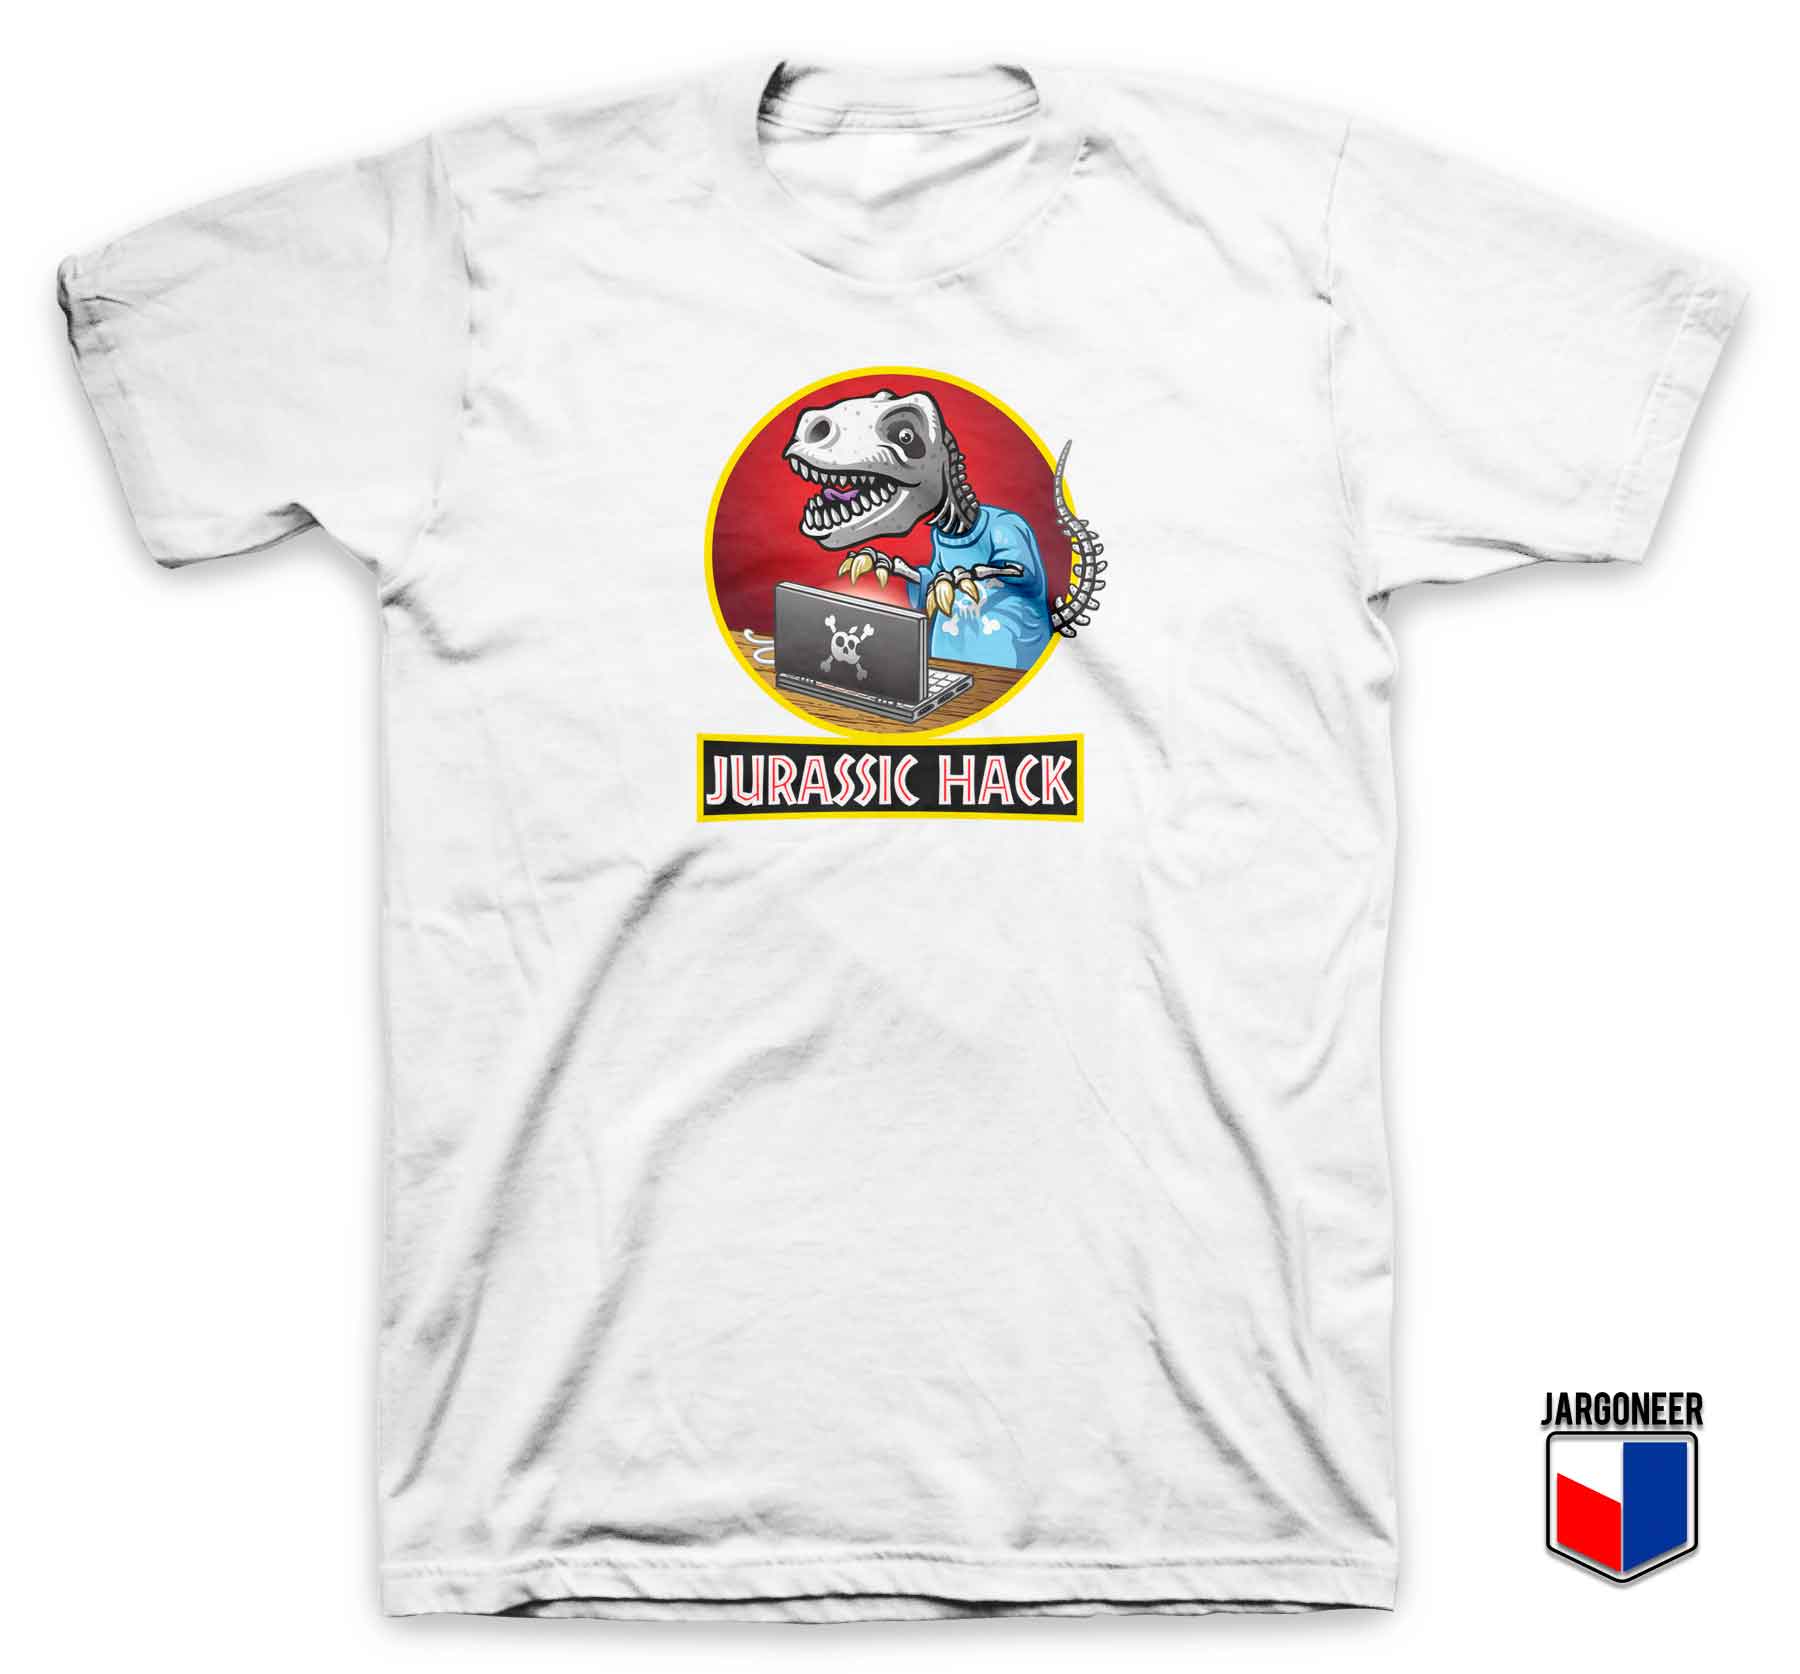 Jurassic Hack Parody T Shirt - Shop Unique Graphic Cool Shirt Designs